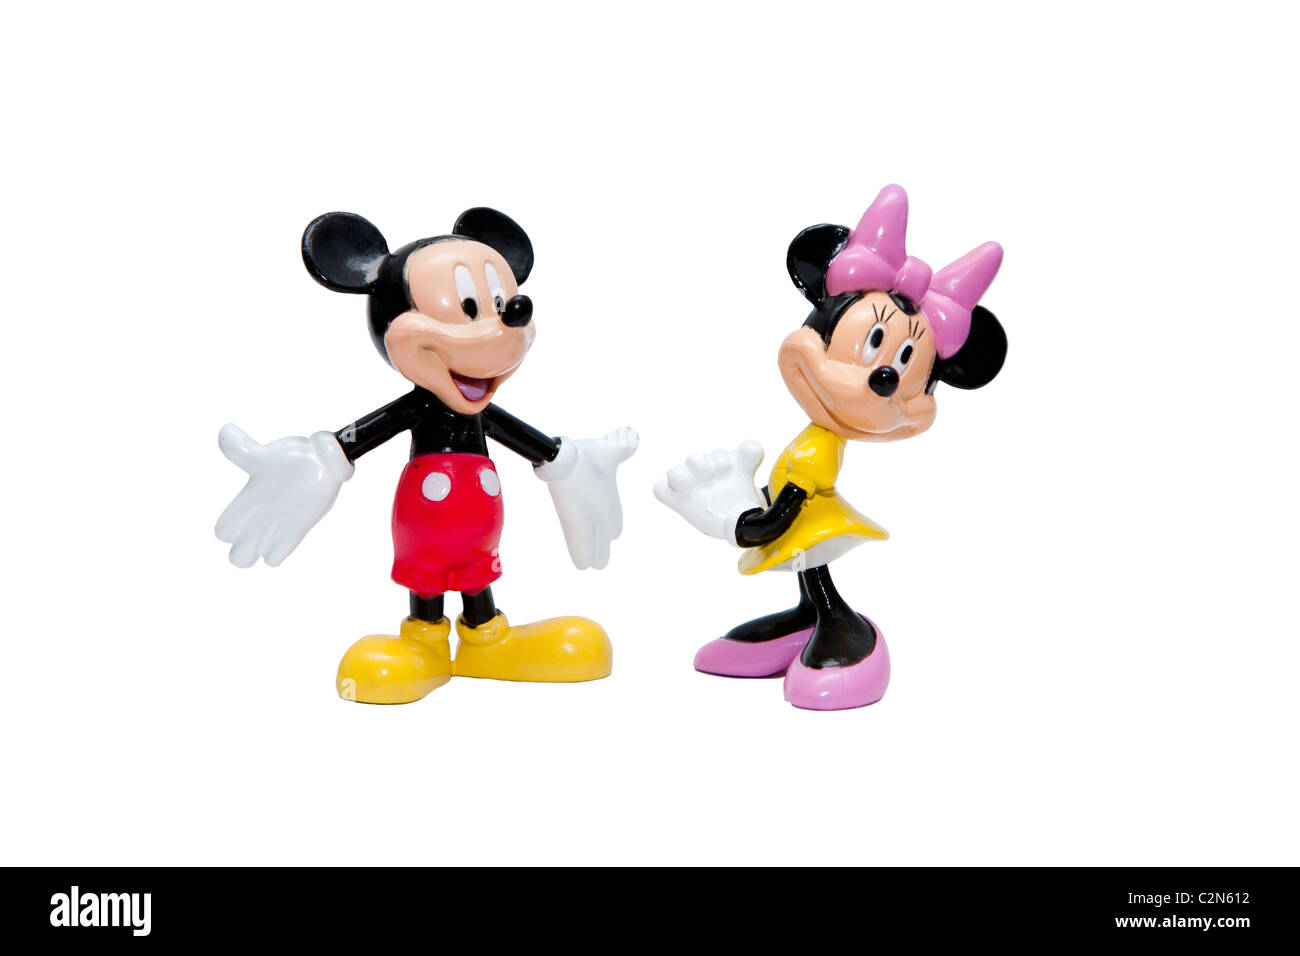 Le Chat Noir Boutique: Disney Goofy Many Faces of Walt Disney